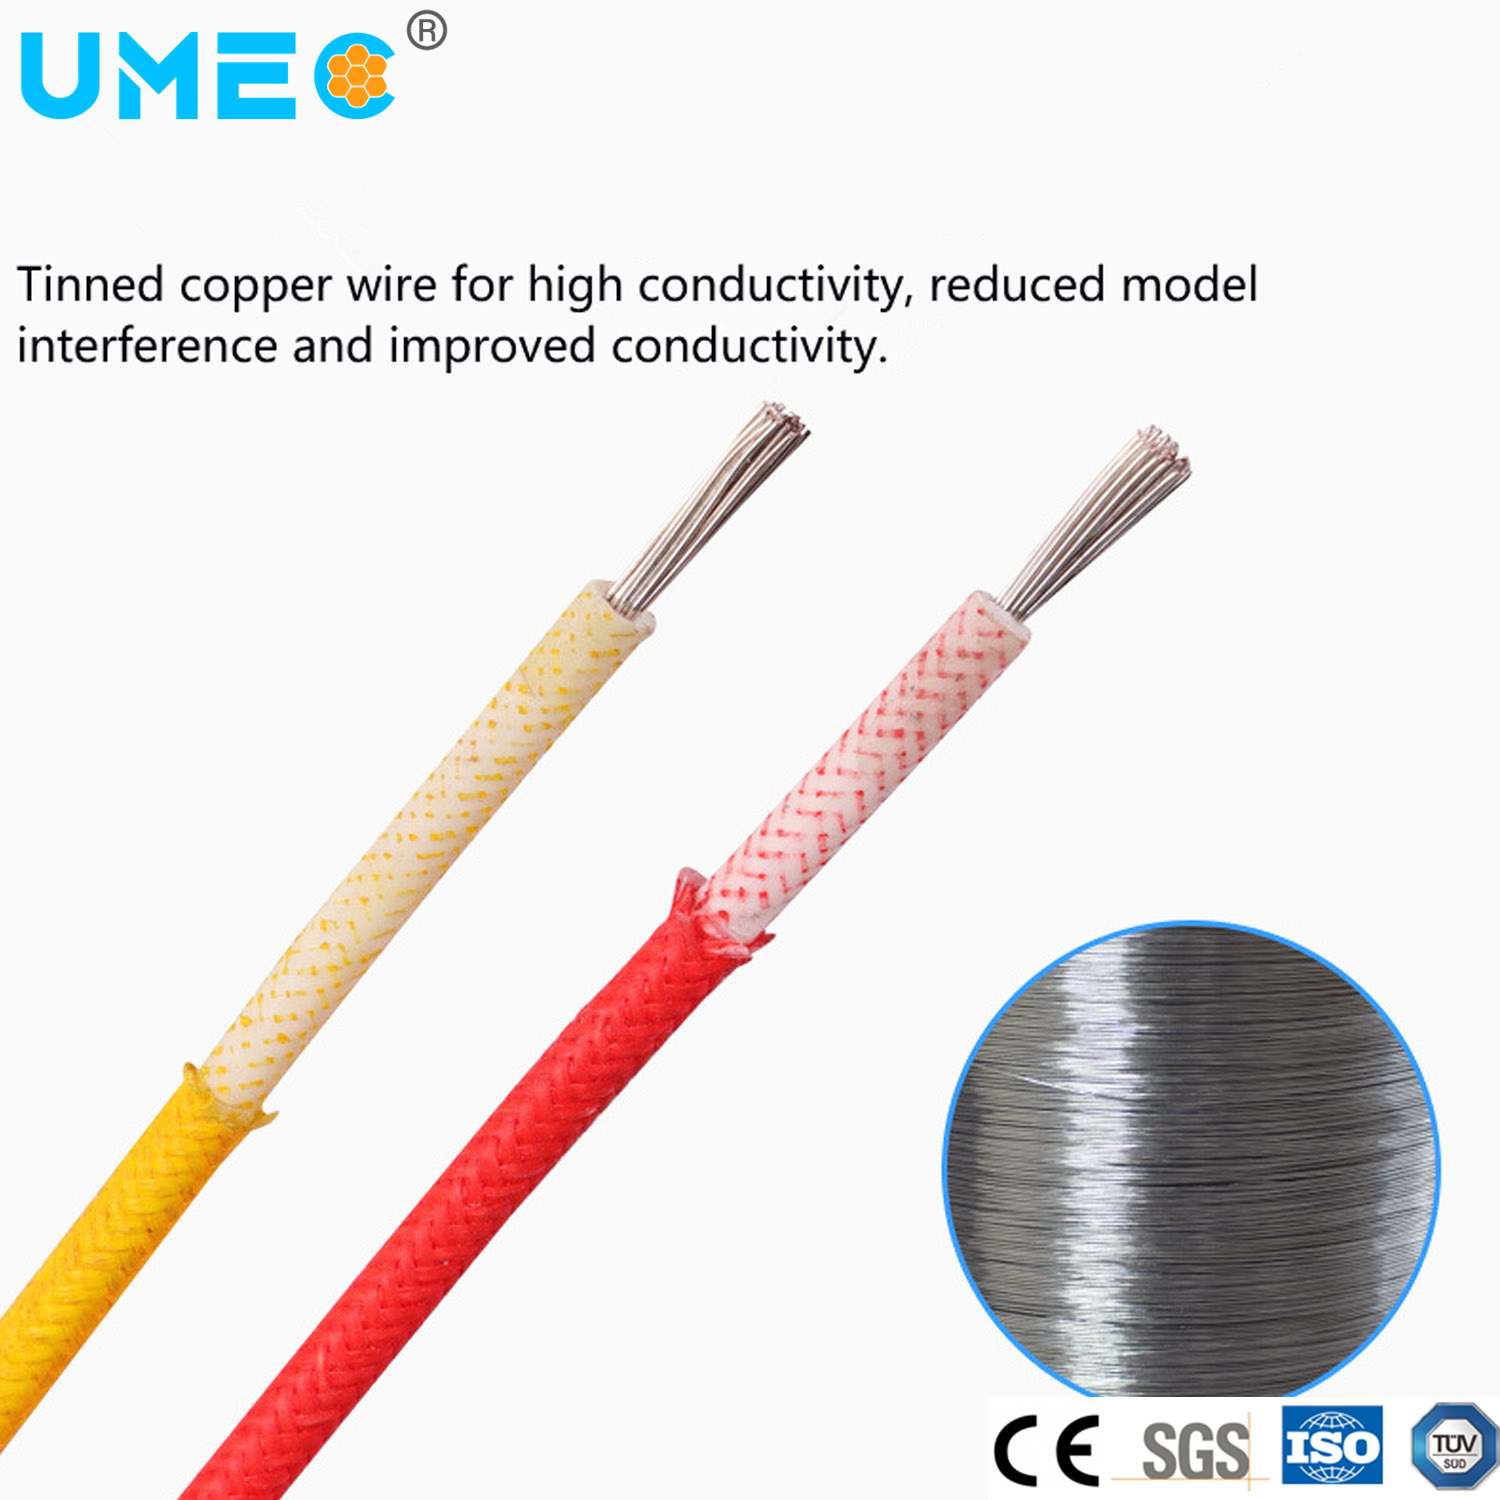 
                IEC 60228 con cables finos filamentos 300/500V Libres de halógenos resistencia al calor Agrp Cable Agr
            